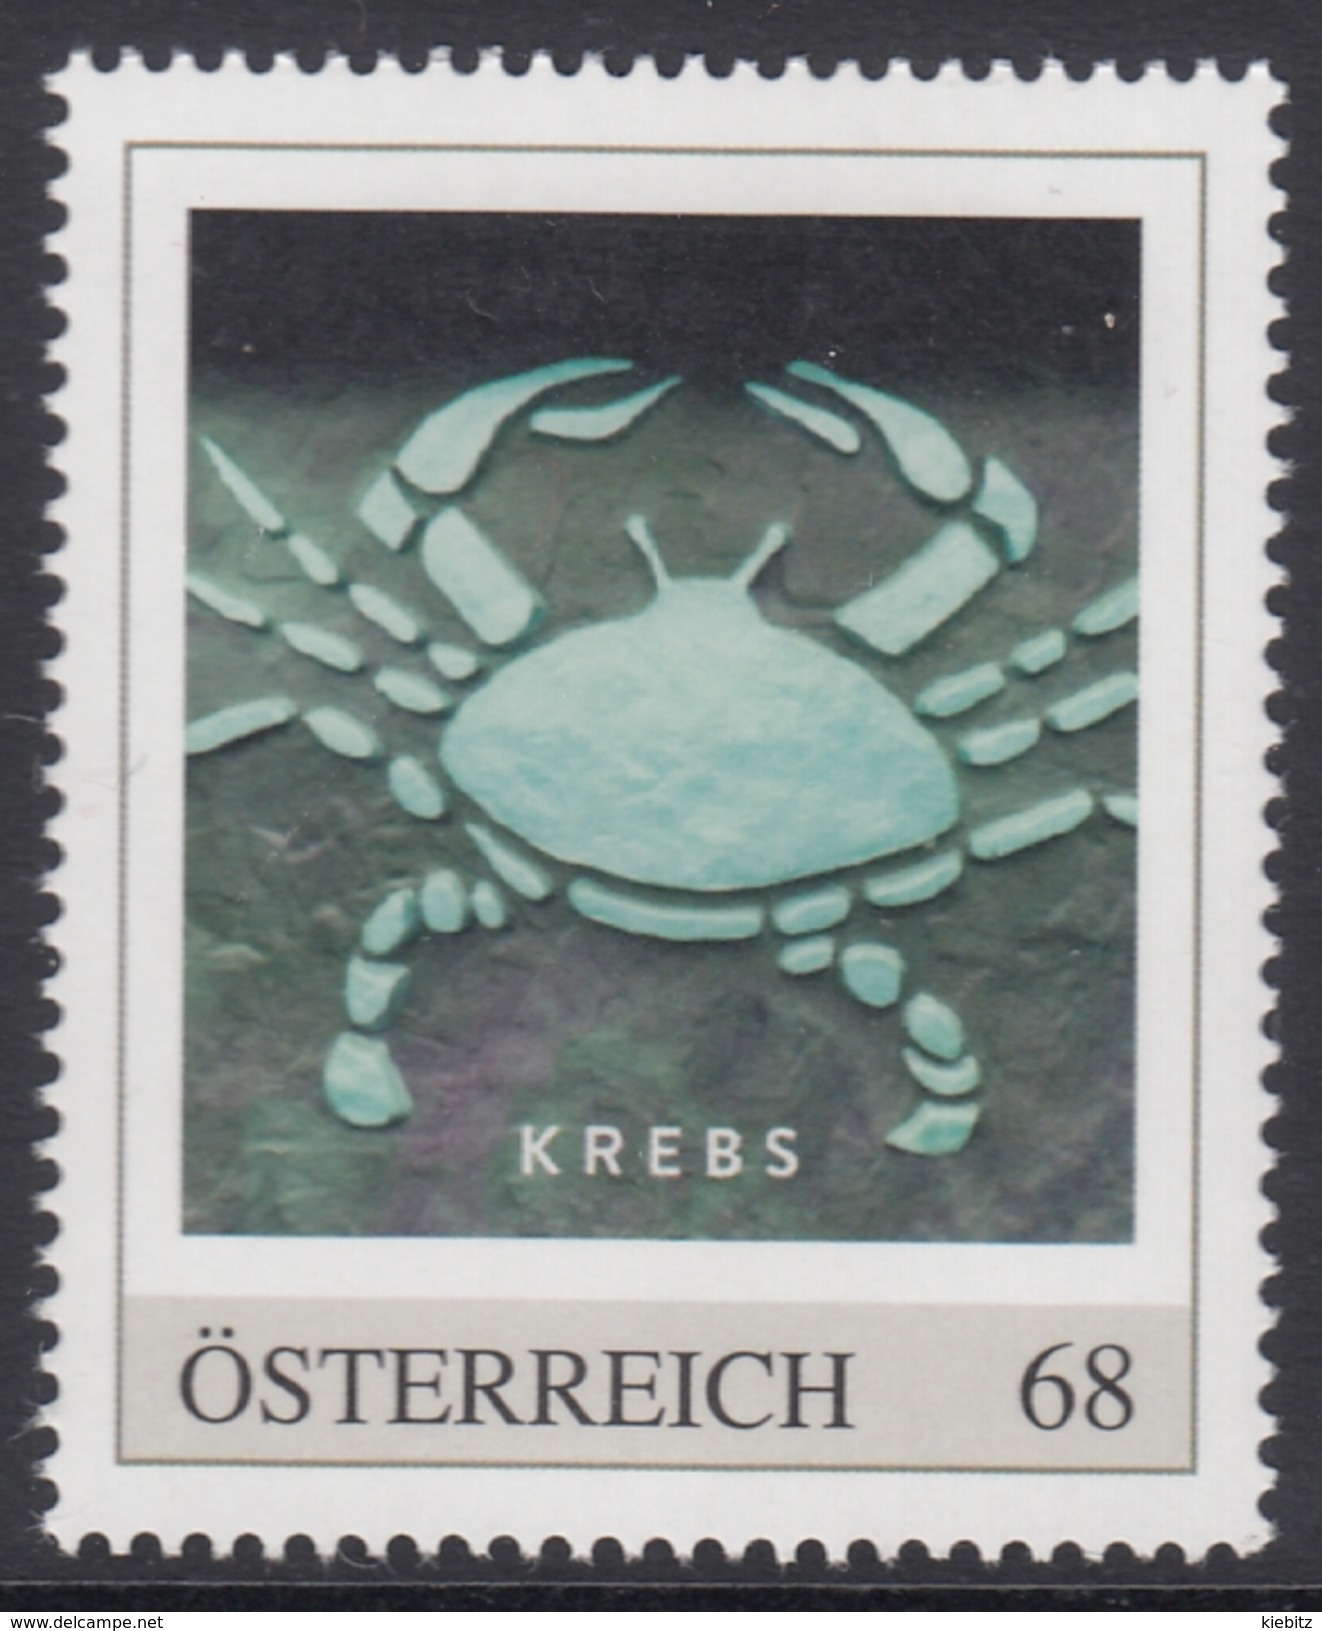 ÖSTERREICH 2016 ** Astrologie - KREBS Sternzeichen - PM Personalized Stamp MNH - Astrología